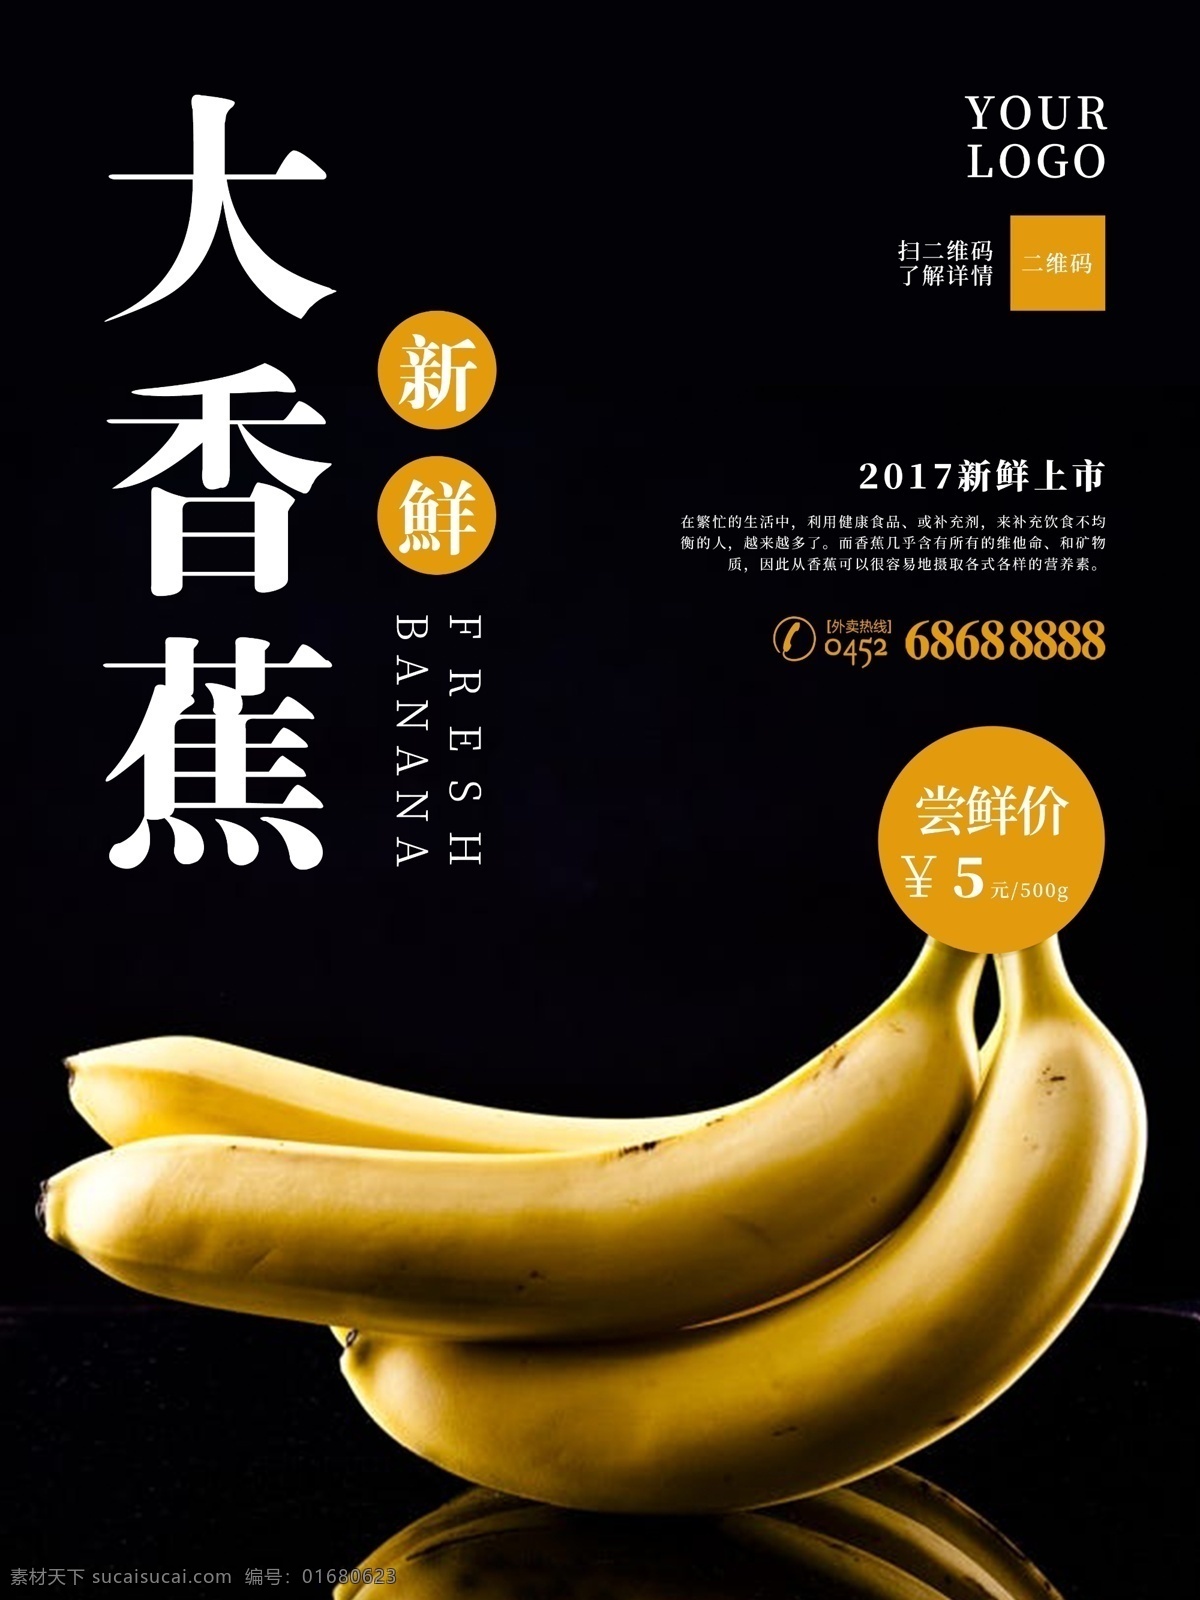 大 香蕉 夏季 精品 水果 美食 海报 香蕉促销 大香蕉 黄香蕉 大香蕉促销 水果店 香蕉水果 水果香蕉 黑色背景 黑色 水果海报 香蕉海报 促销 店铺 购物